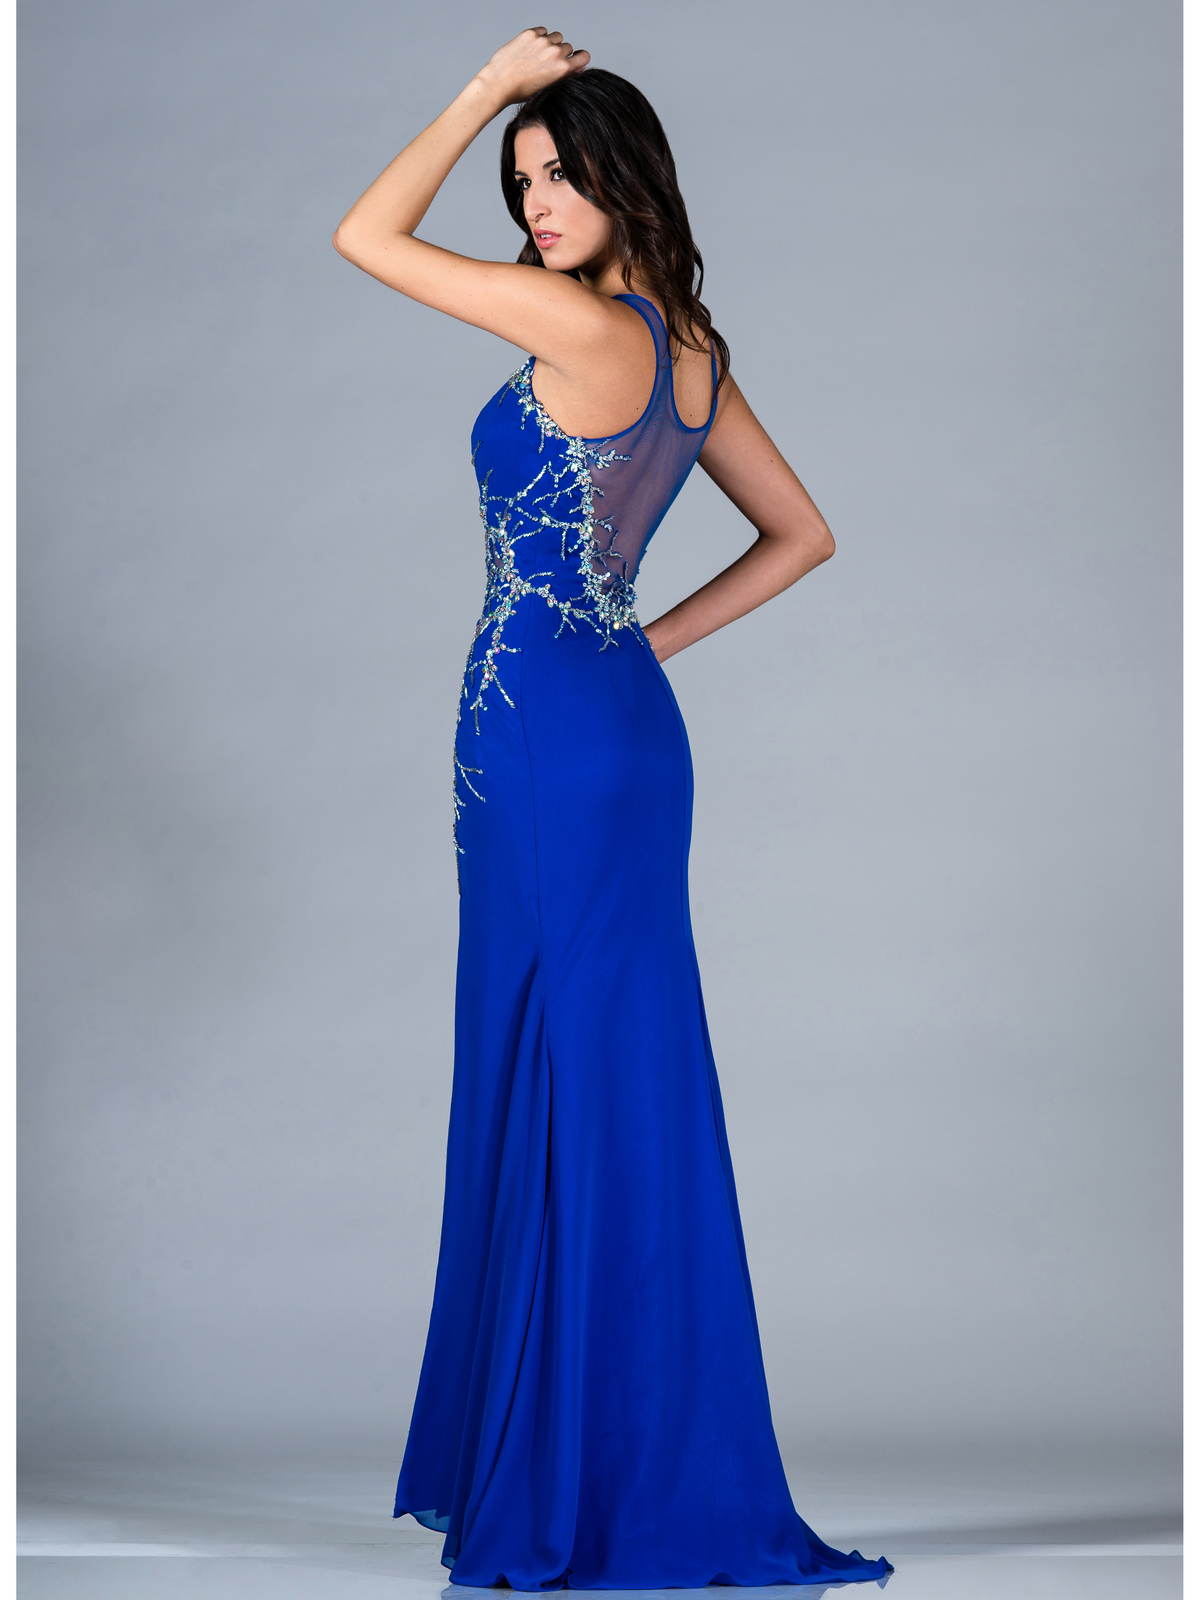 Royal Blue Evening Dress | Sung Boutique L.A.